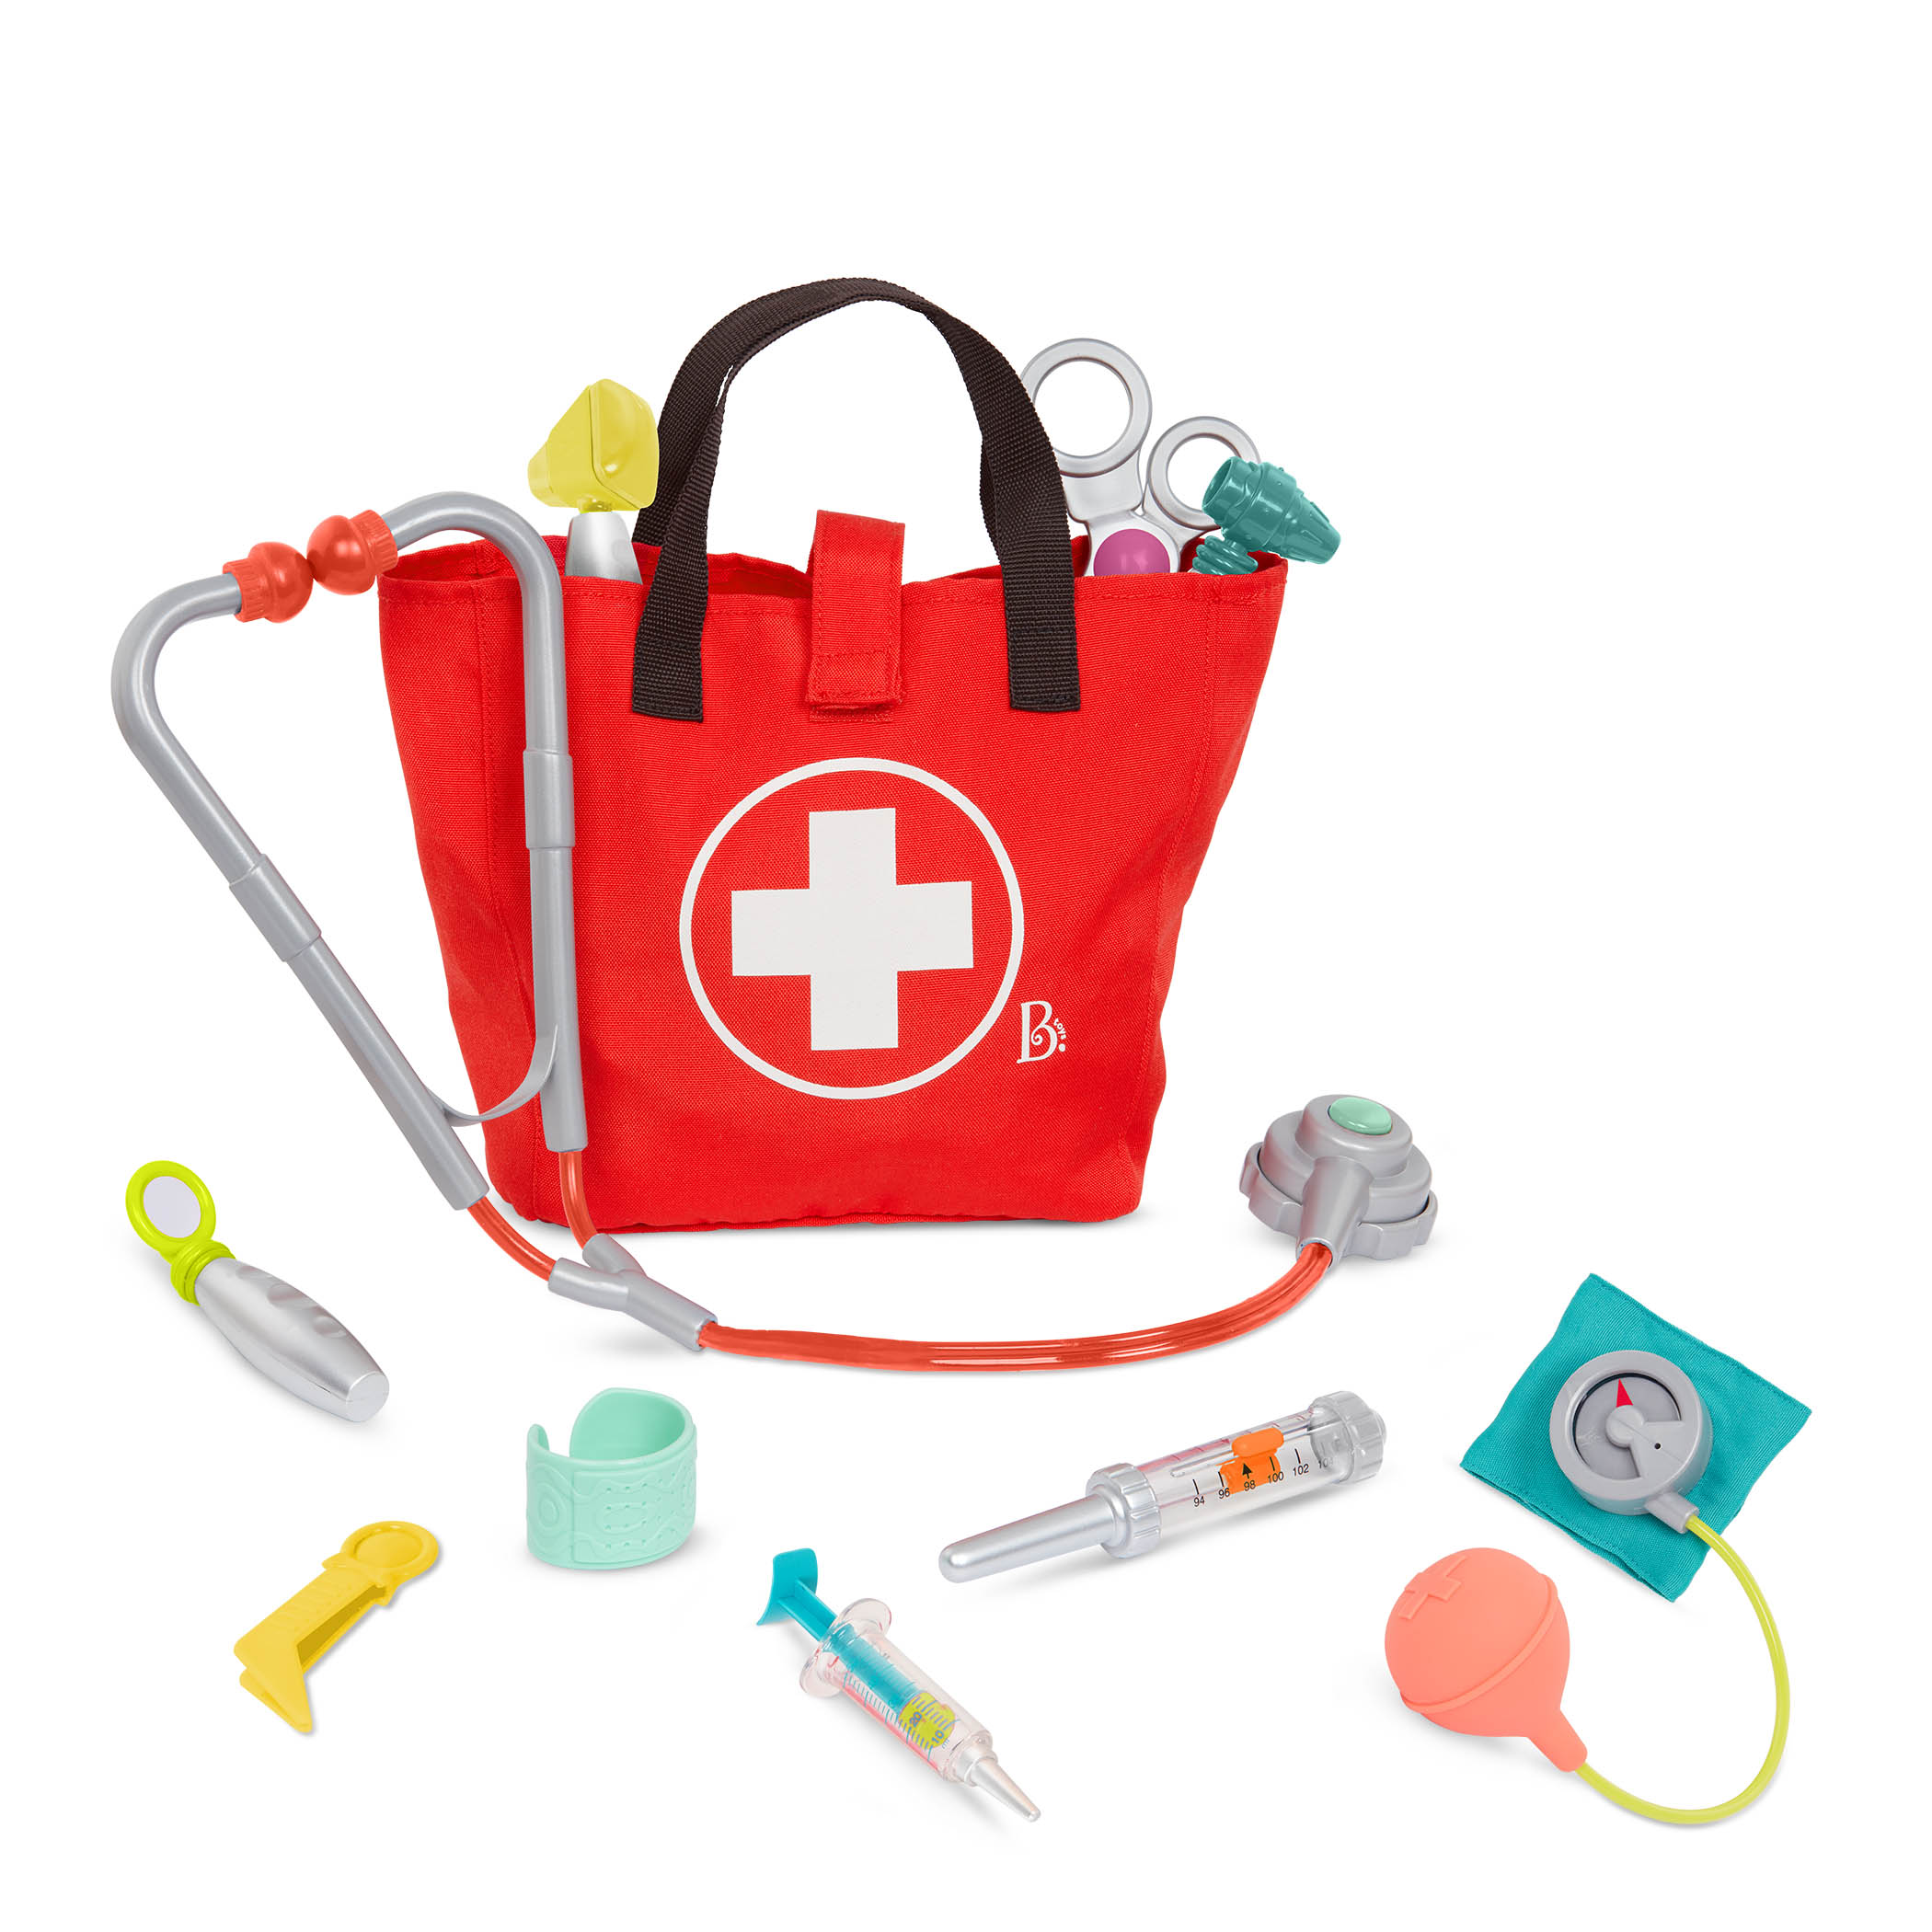 B.toys, Mini Doctor Care Kit – zestaw małego lekarza w torbie